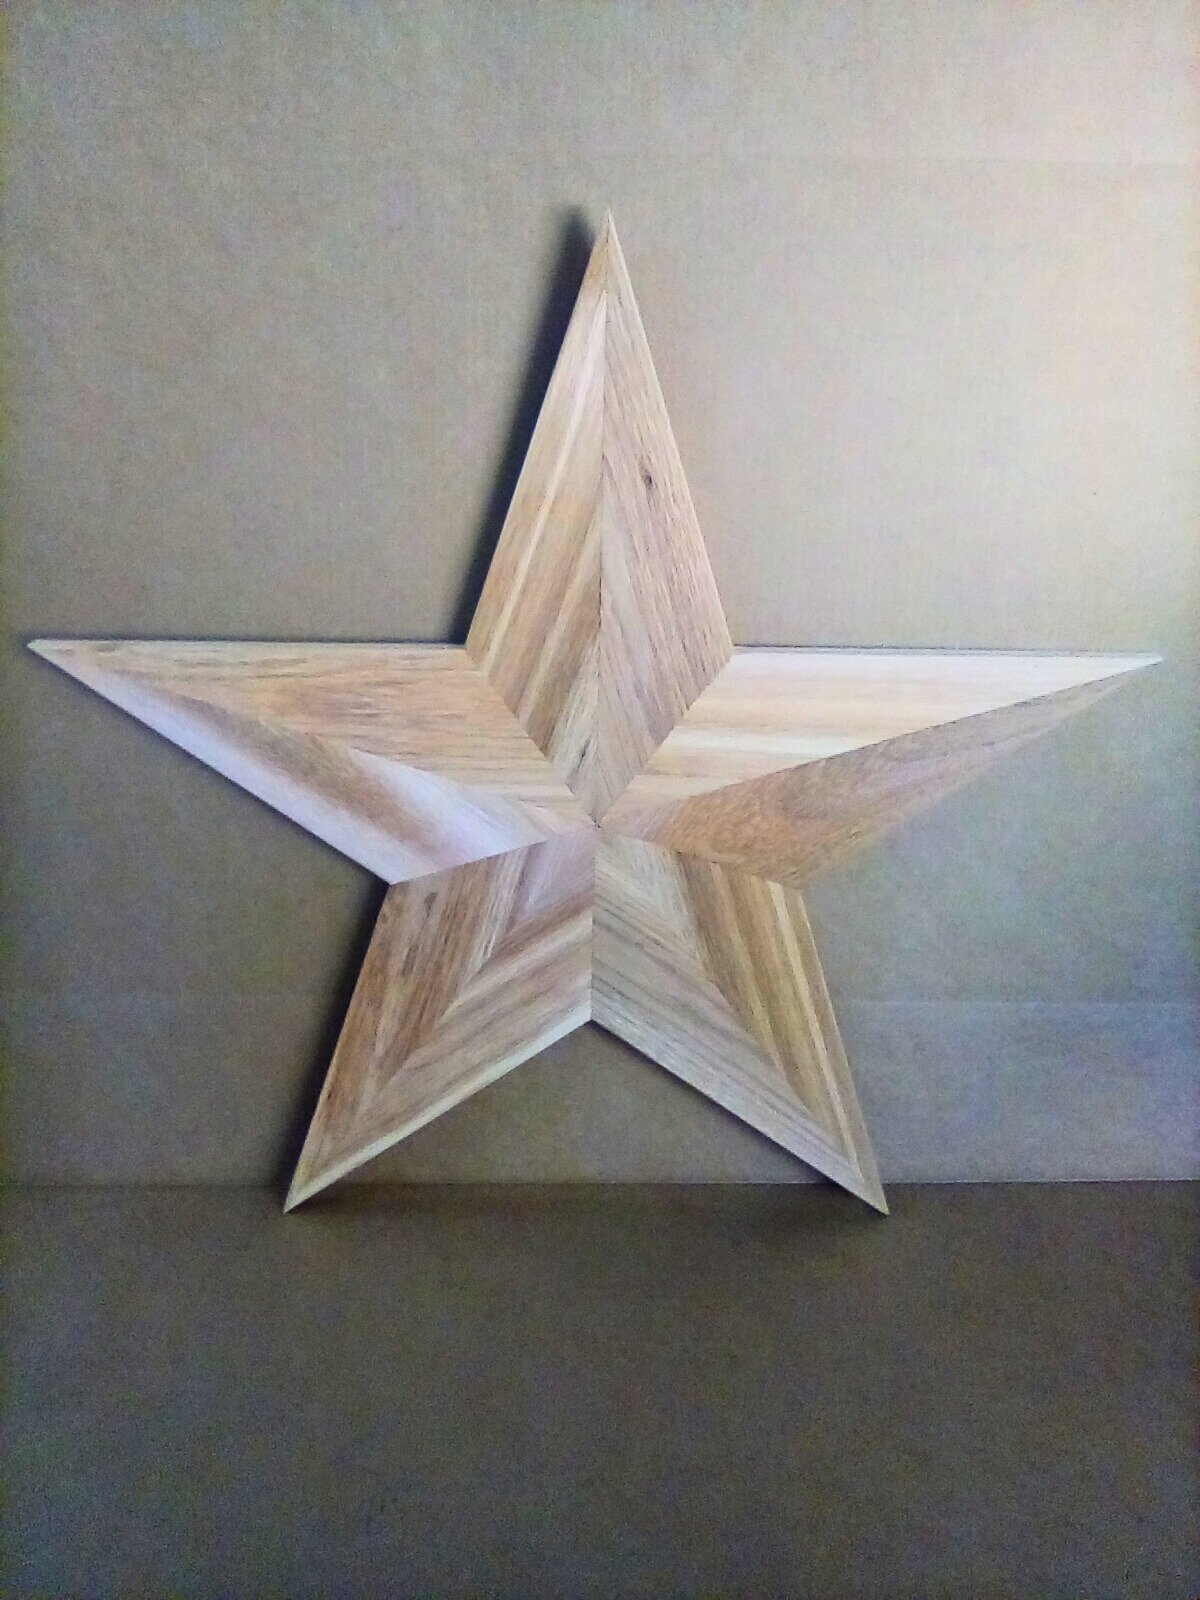 3D Wooden Star